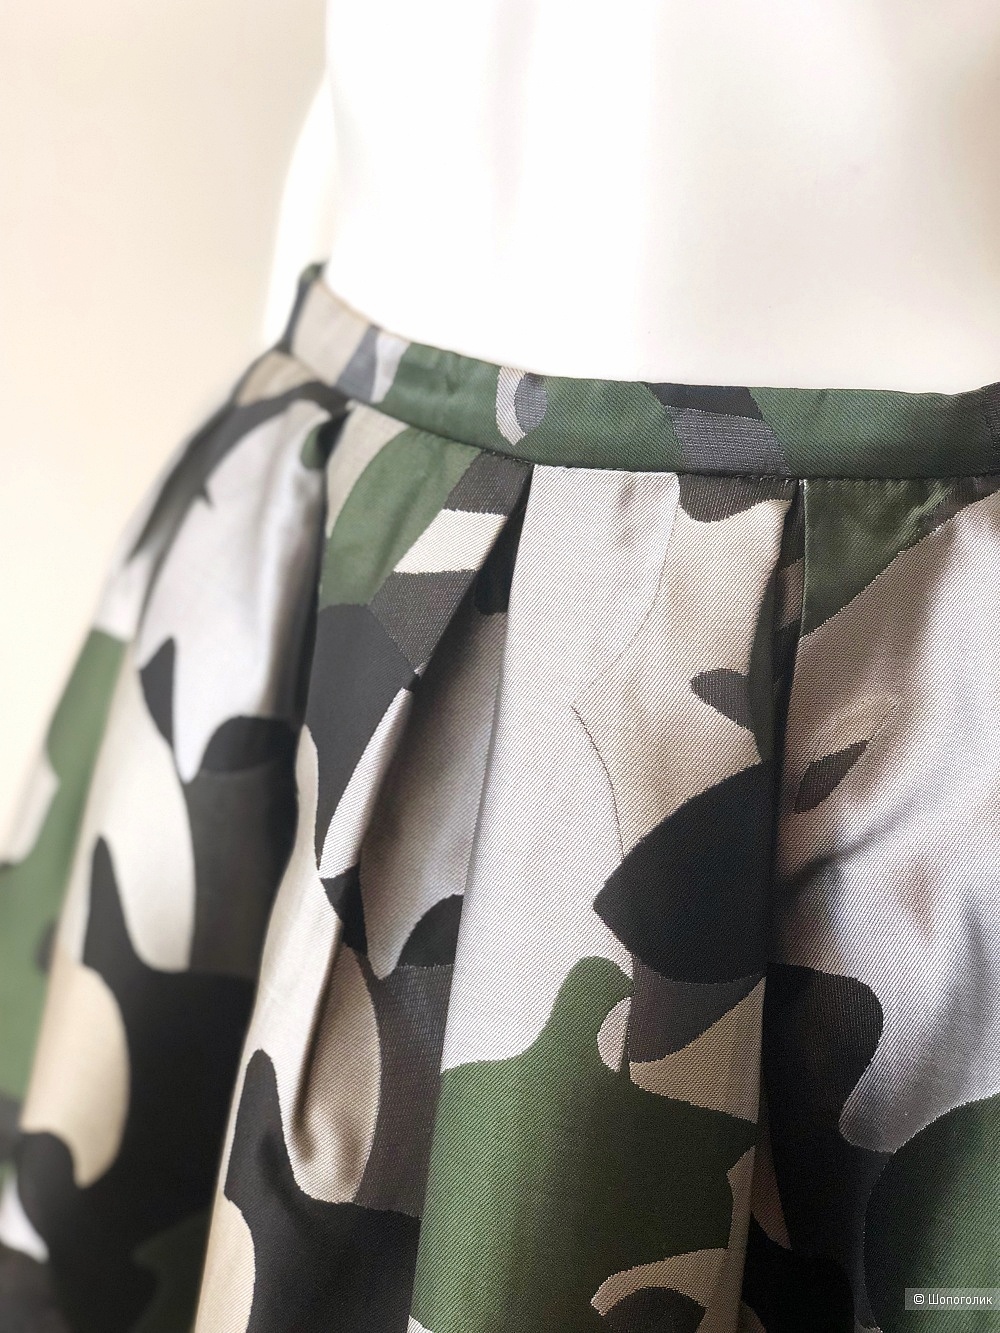 Шелковая атласная юбка StyleTrack, размер S/М